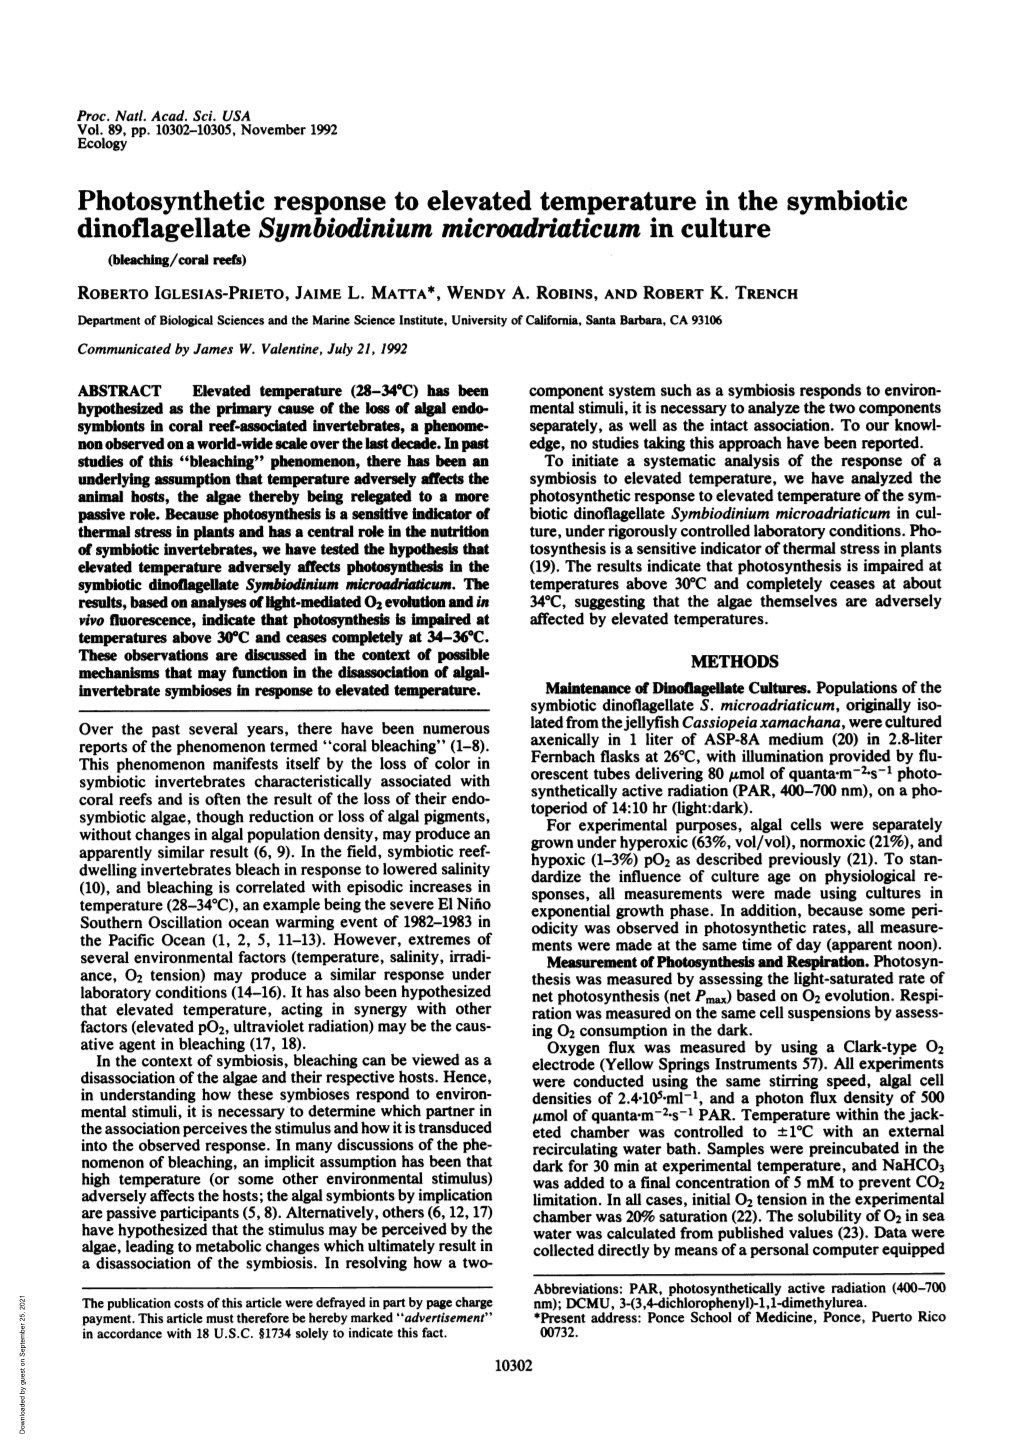 Dinoflagellate Symbiodinium Microadriaticum in Culture (Bleaching/Coral Reefs) ROBERTO IGLESIAS-PRIETO, JAIME L